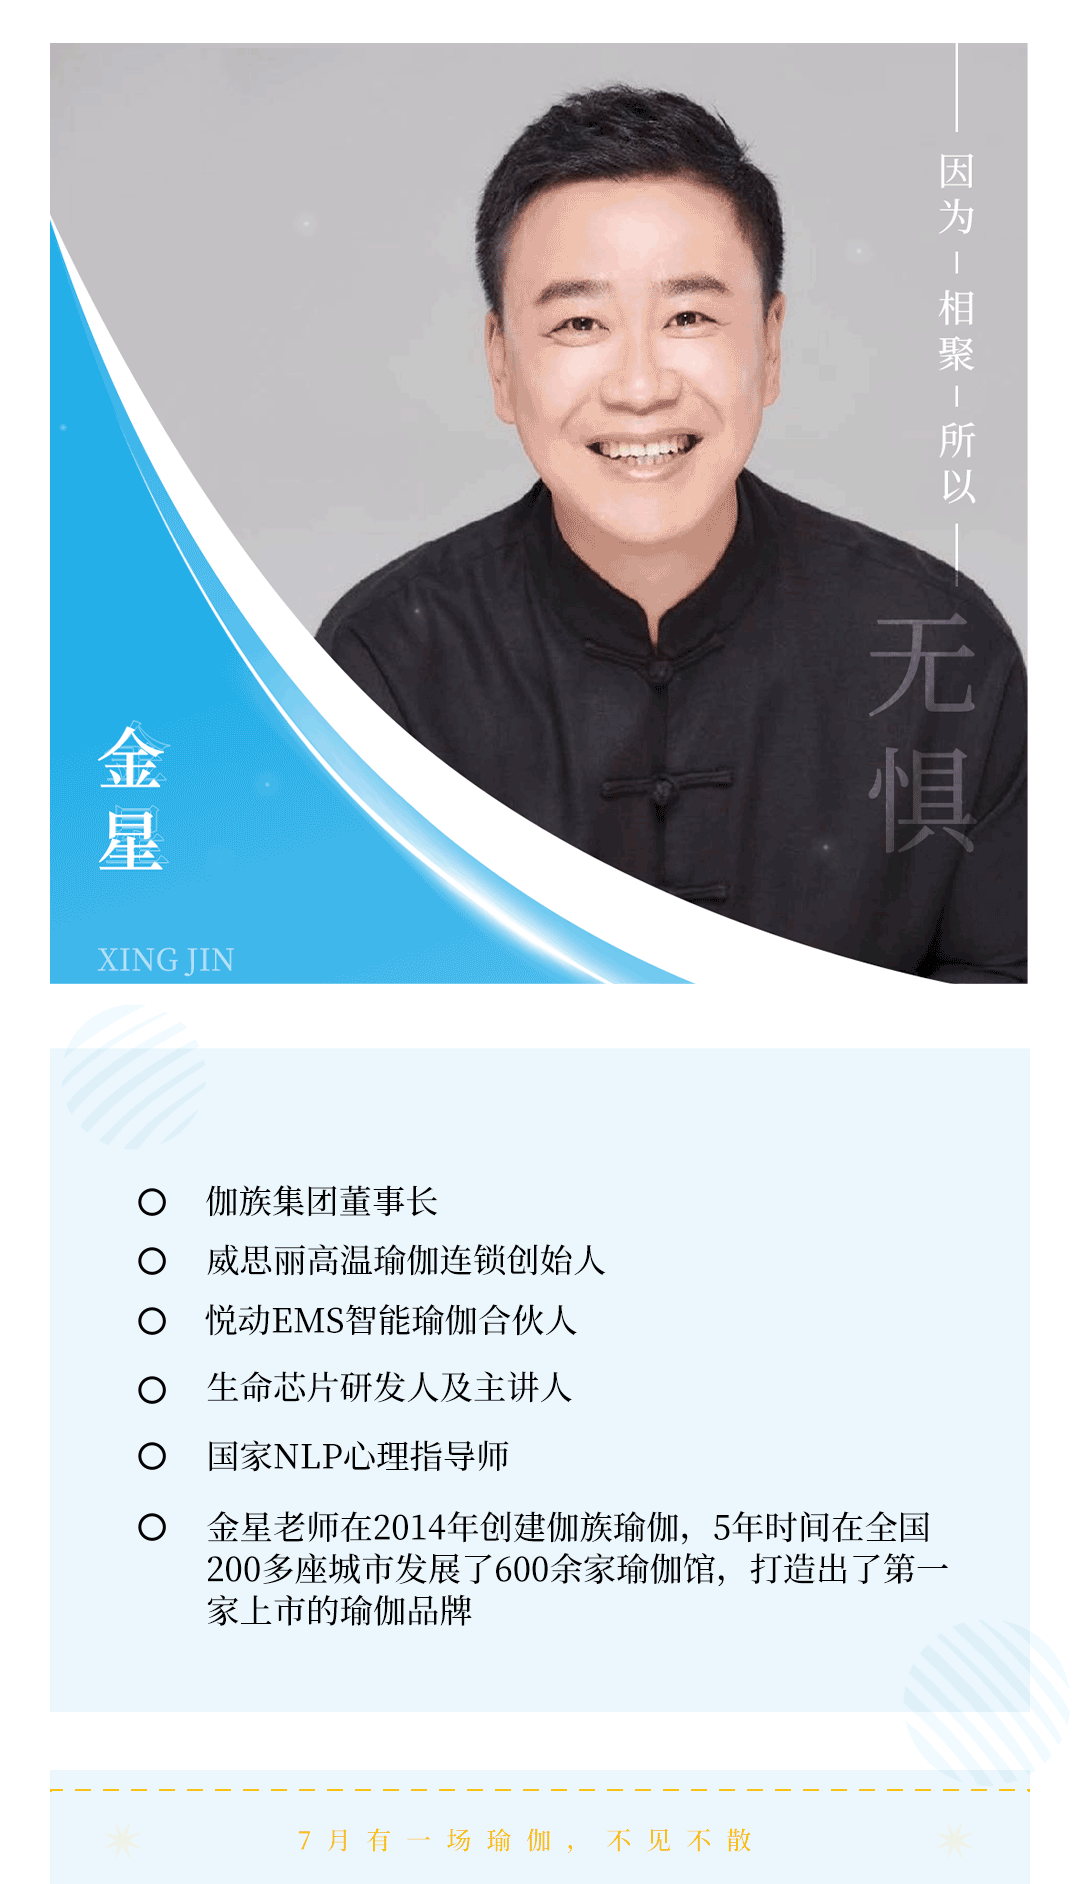 上海国际瑜伽大会导师——金星